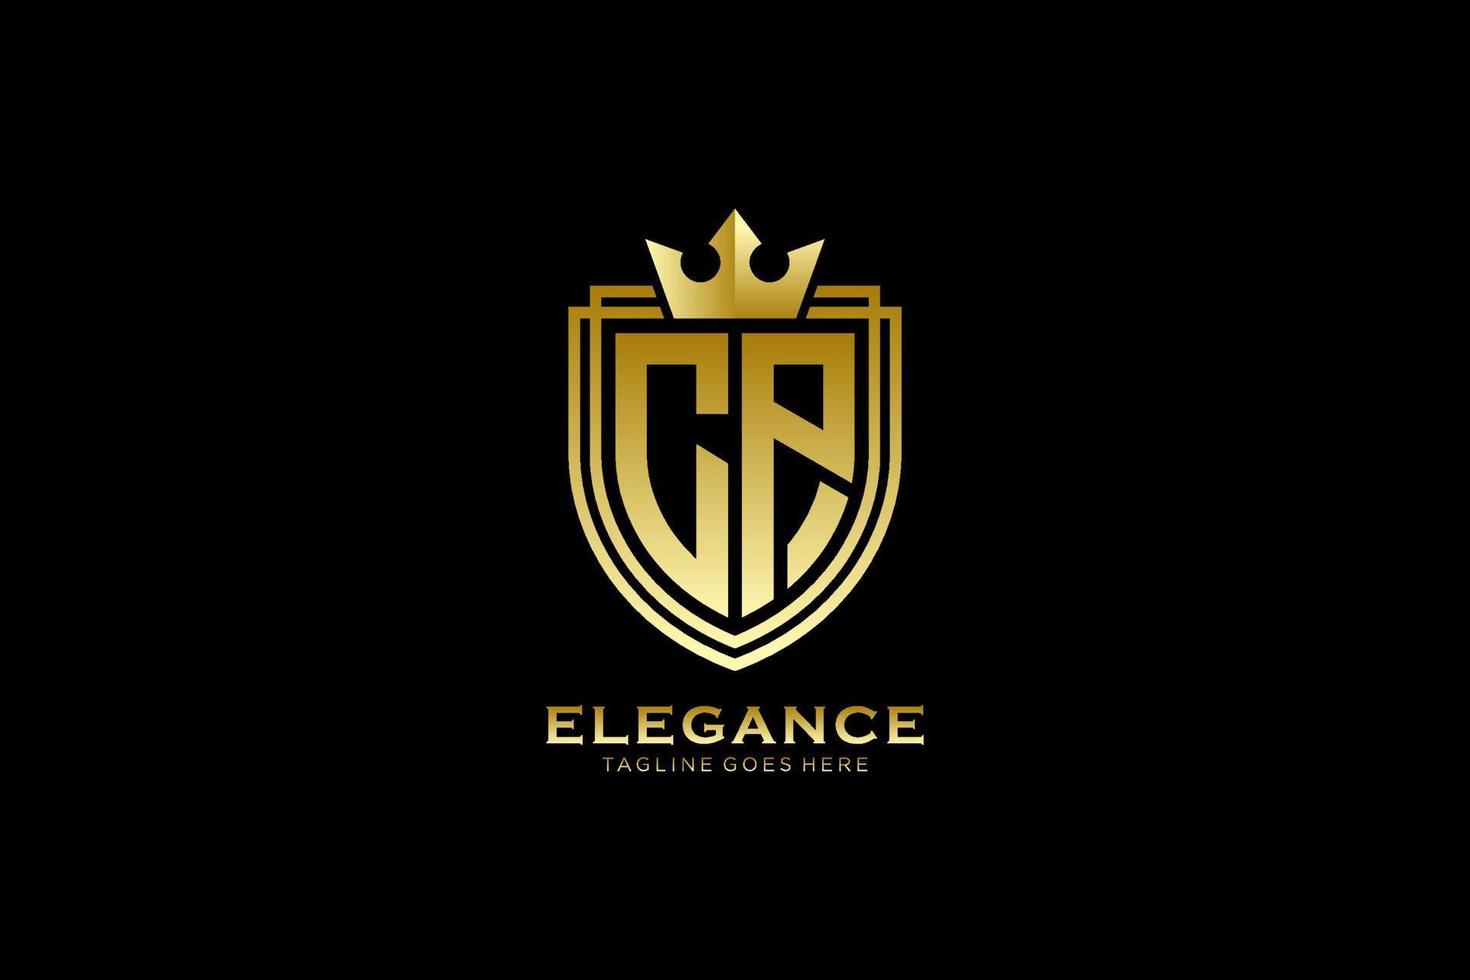 logo monogramme de luxe élégant initial cp ou modèle de badge avec volutes et couronne royale - parfait pour les projets de marque de luxe vecteur